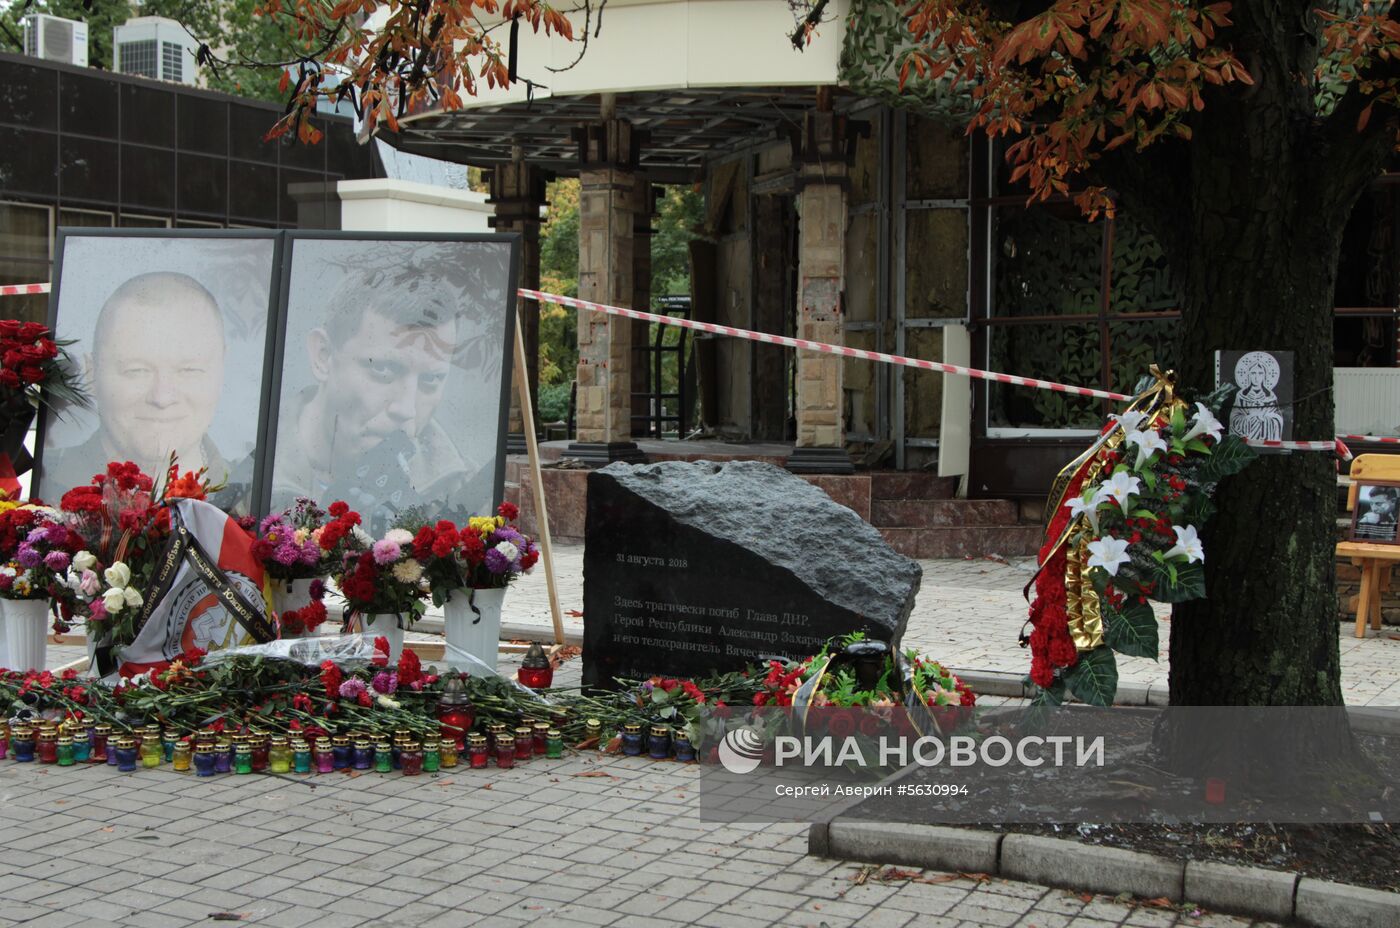 Мемориальный камень на месте гибели А. Захарченко в Донецке